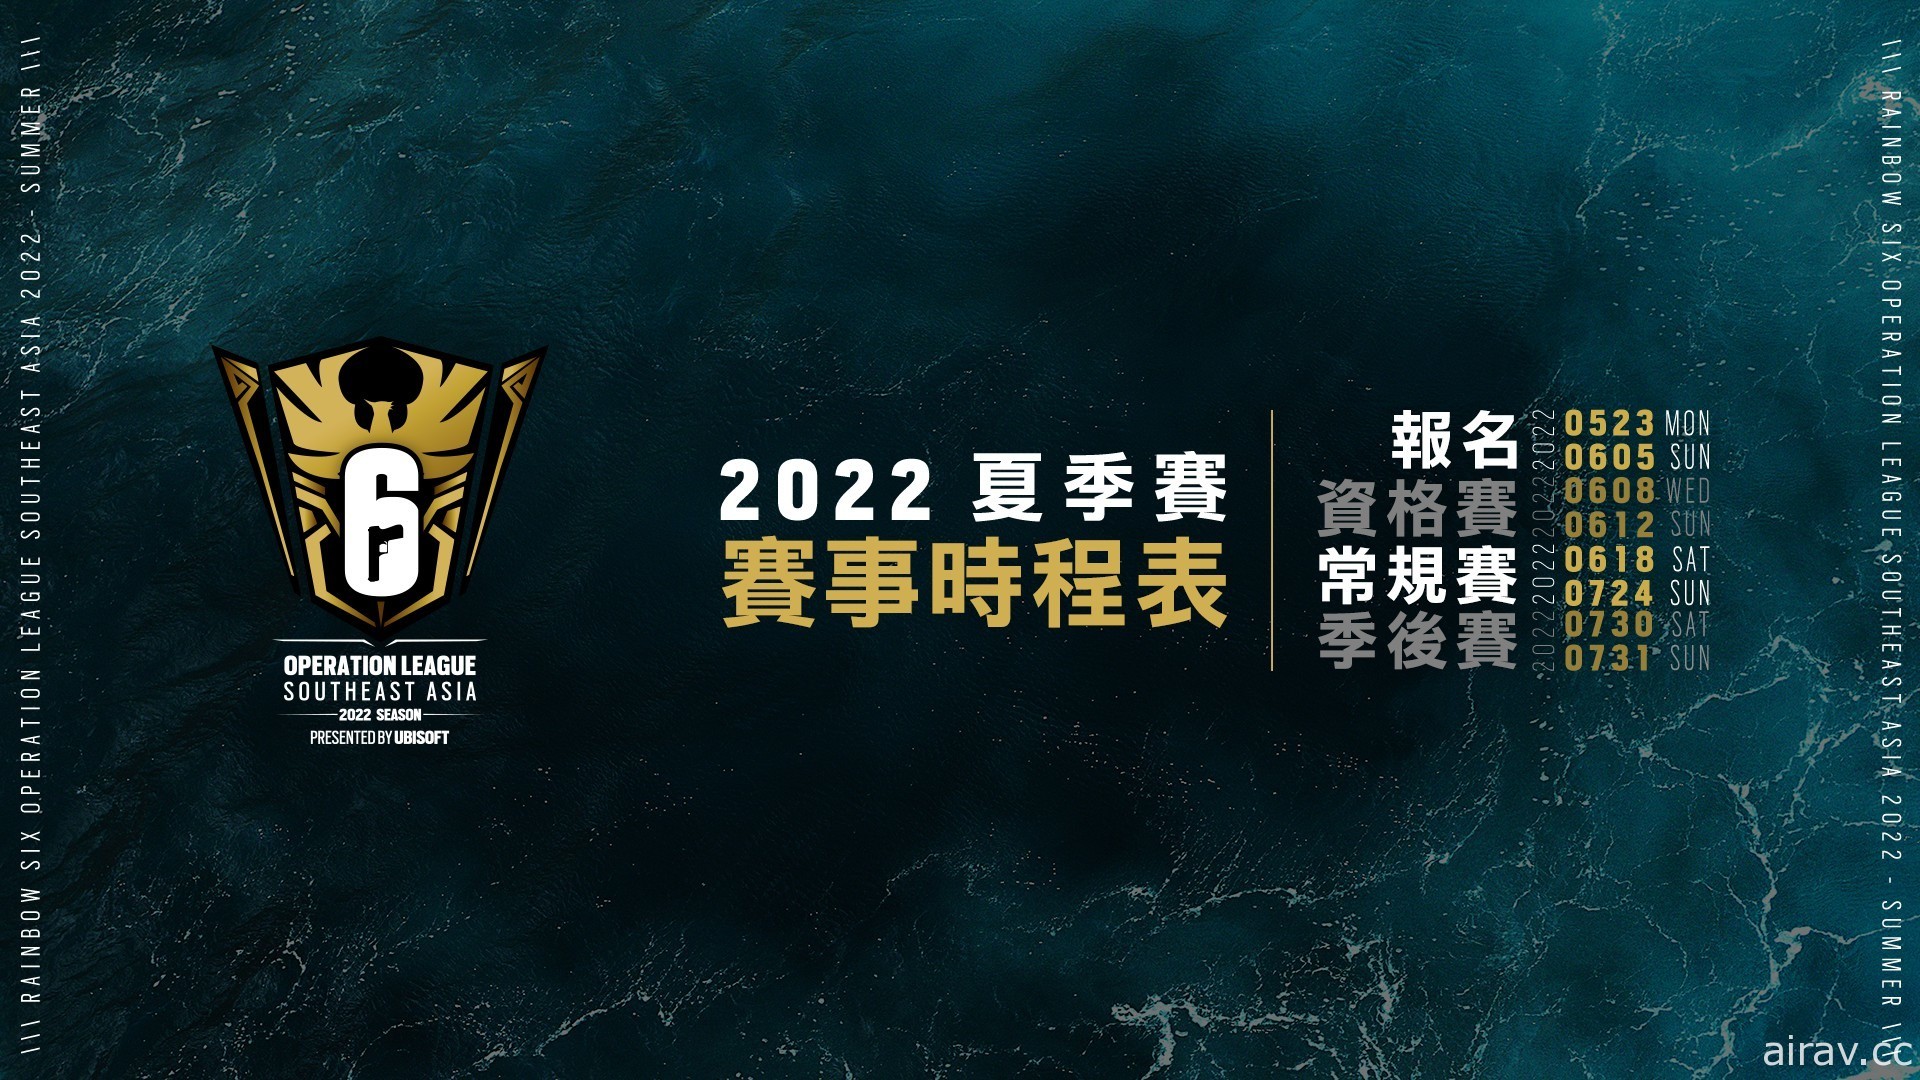 《虹彩六號》全新整合「東南亞菁英聯賽」2022 夏季賽 5/23 正式展開